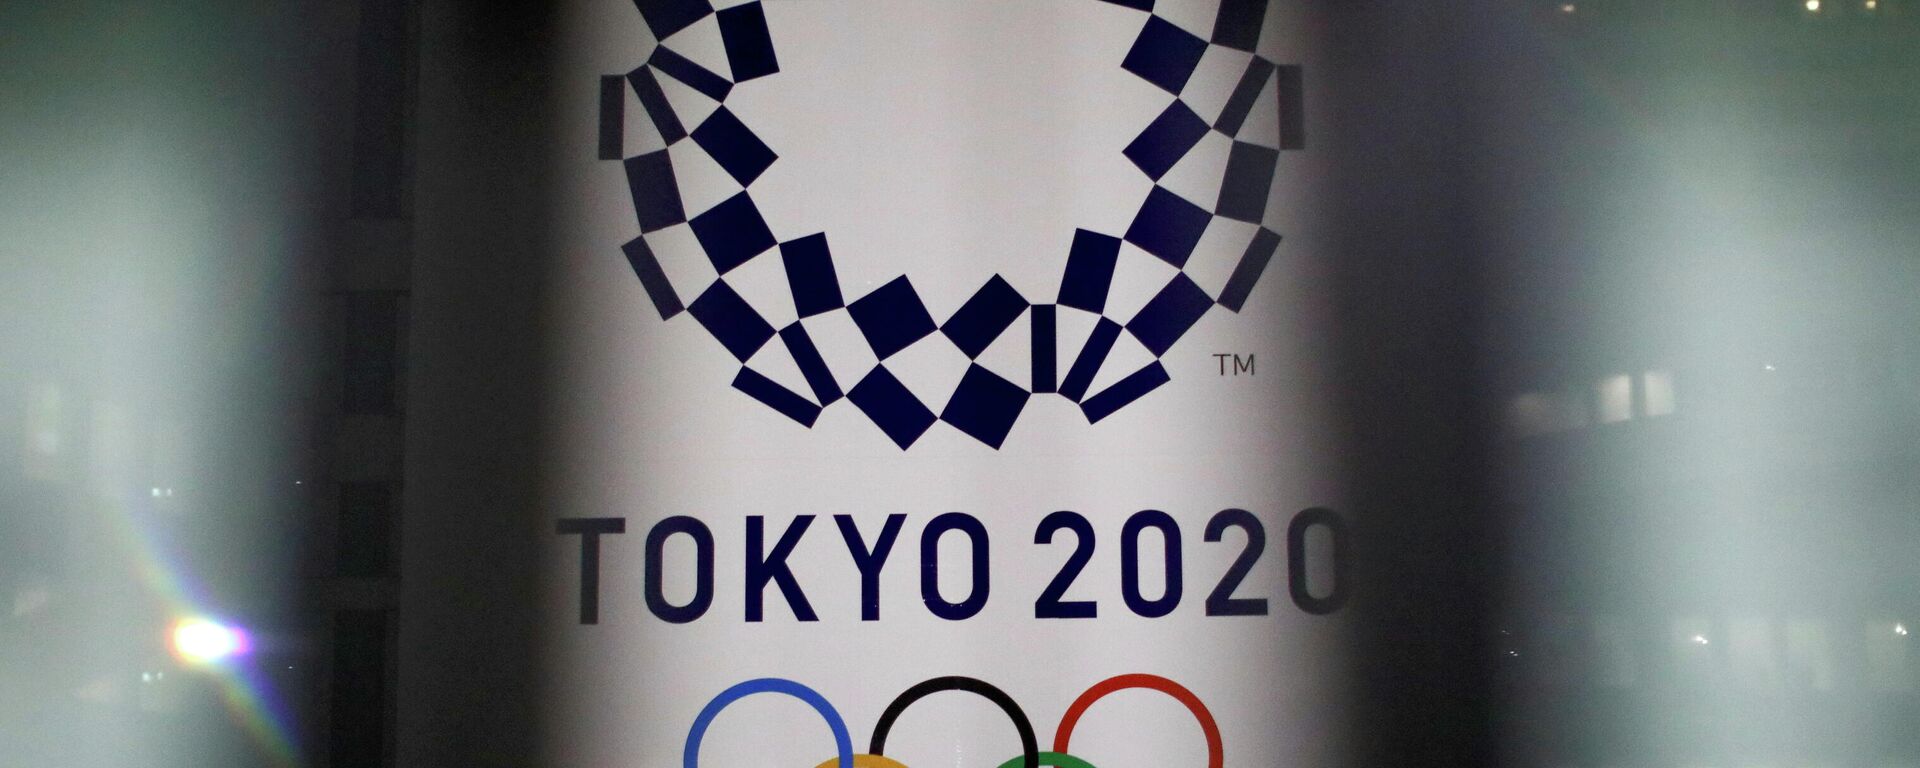 Logo de los Juegos Olímpicos de Tokio - Sputnik Mundo, 1920, 27.05.2021